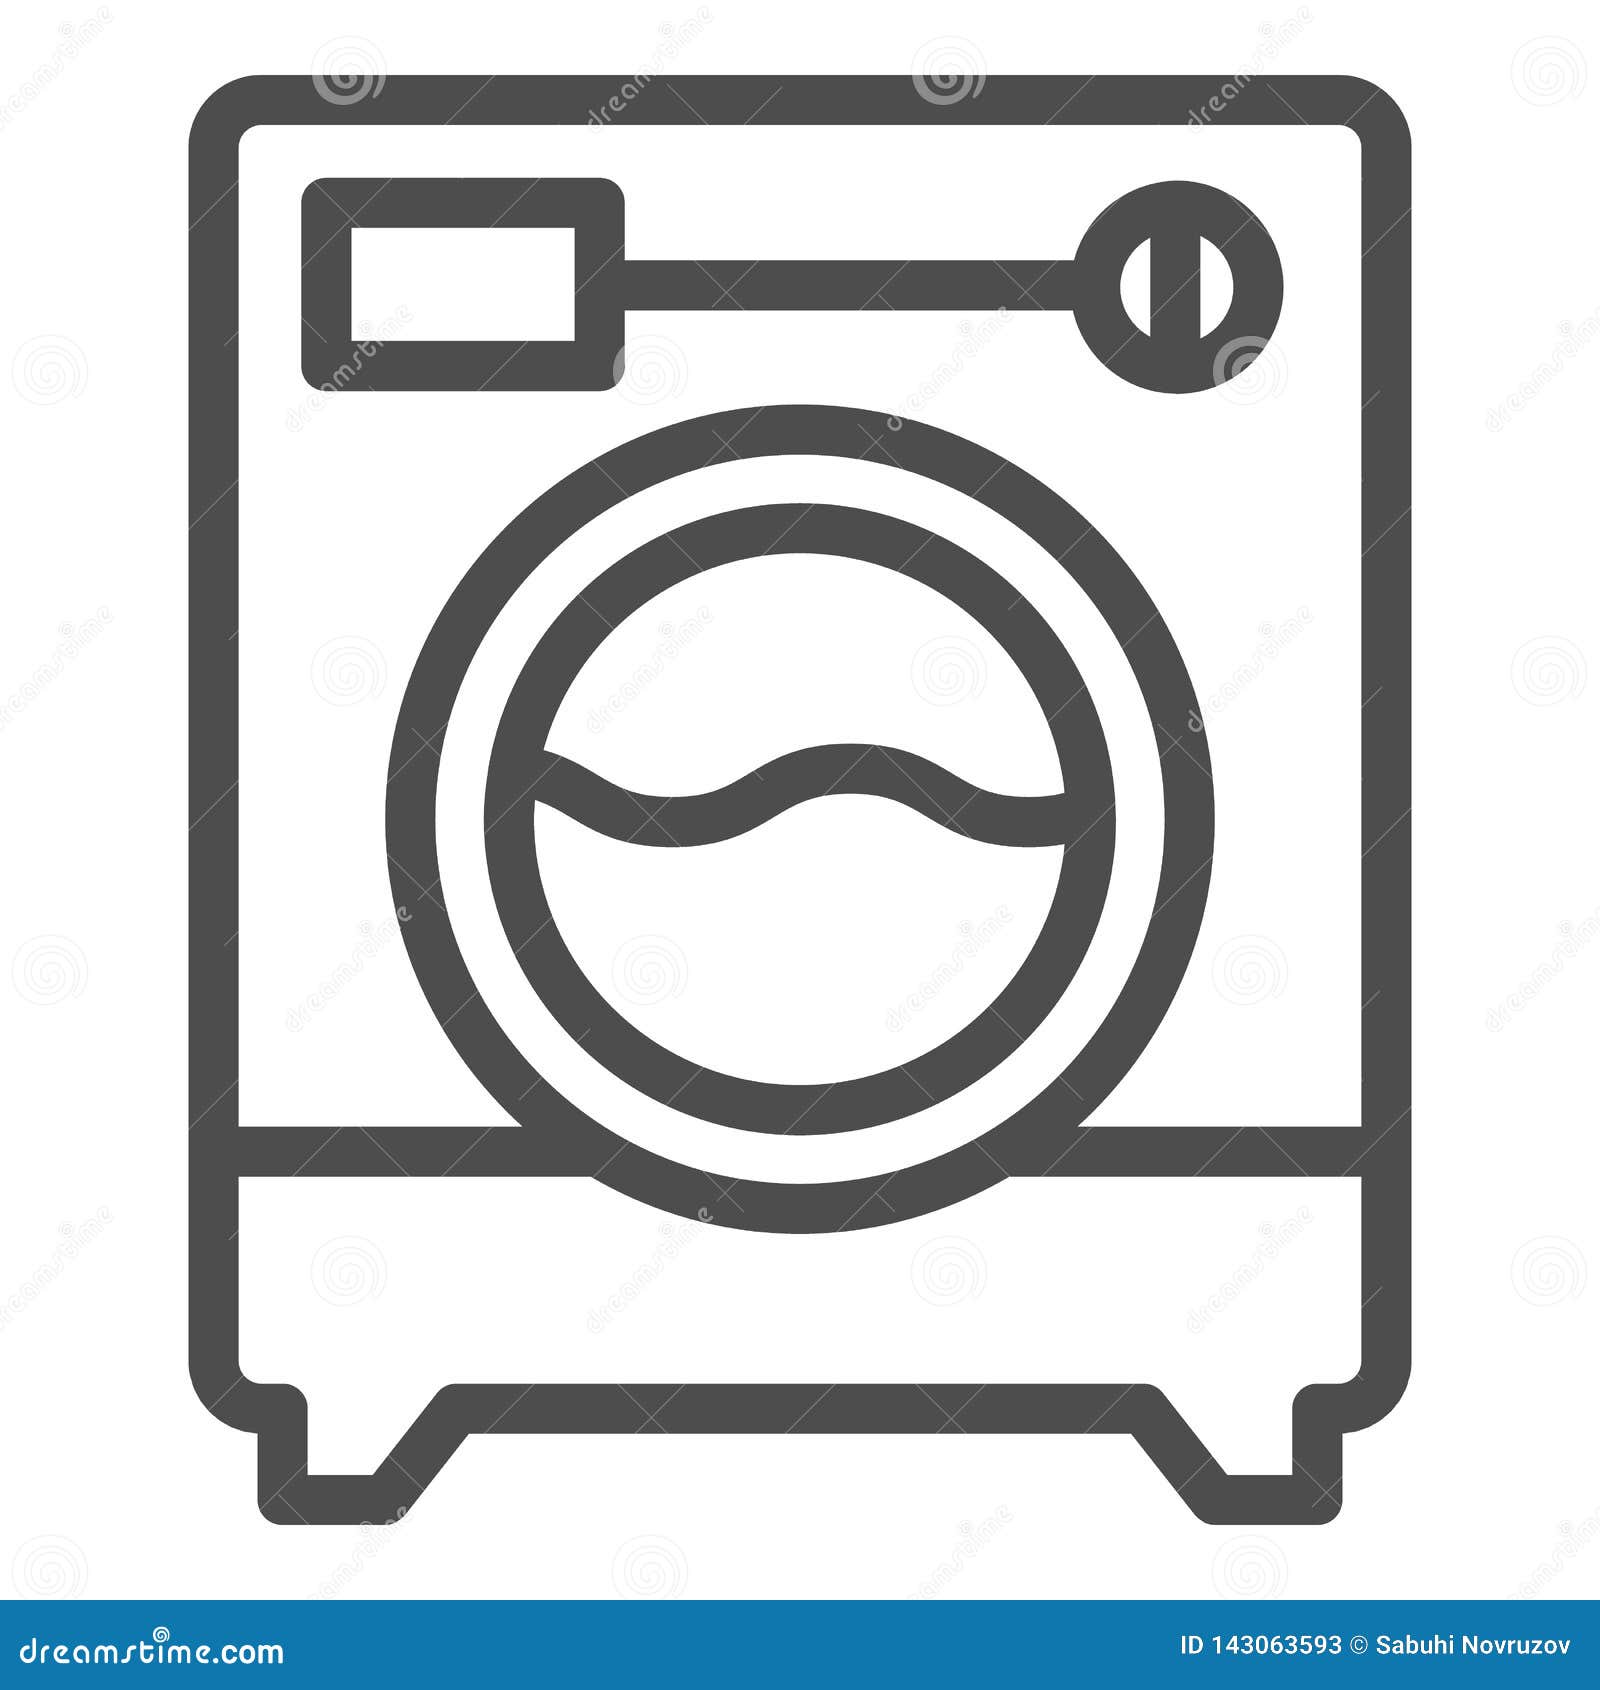 Значок стиральной машины на планировке